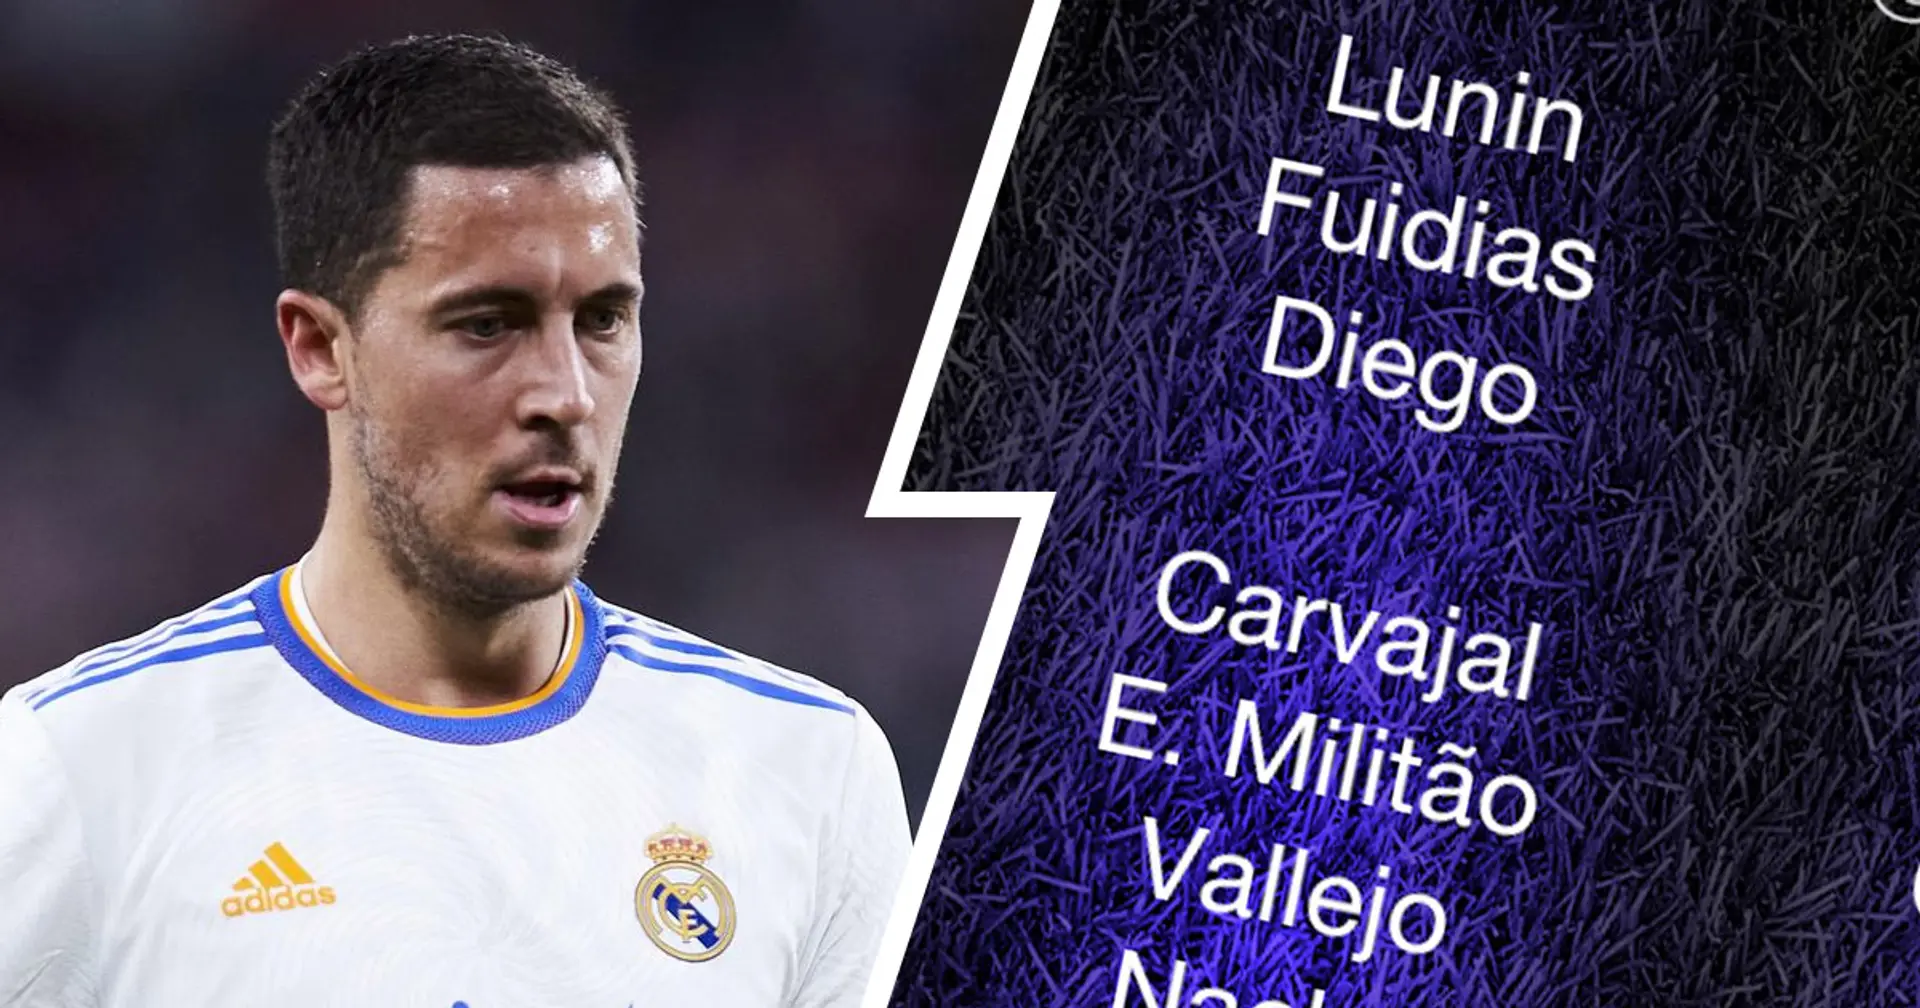 Vuelve Hazard, sin Benzema: el Real Madrid anuncia la convocatoria de 20 jugadores para el partido ante el Cádiz